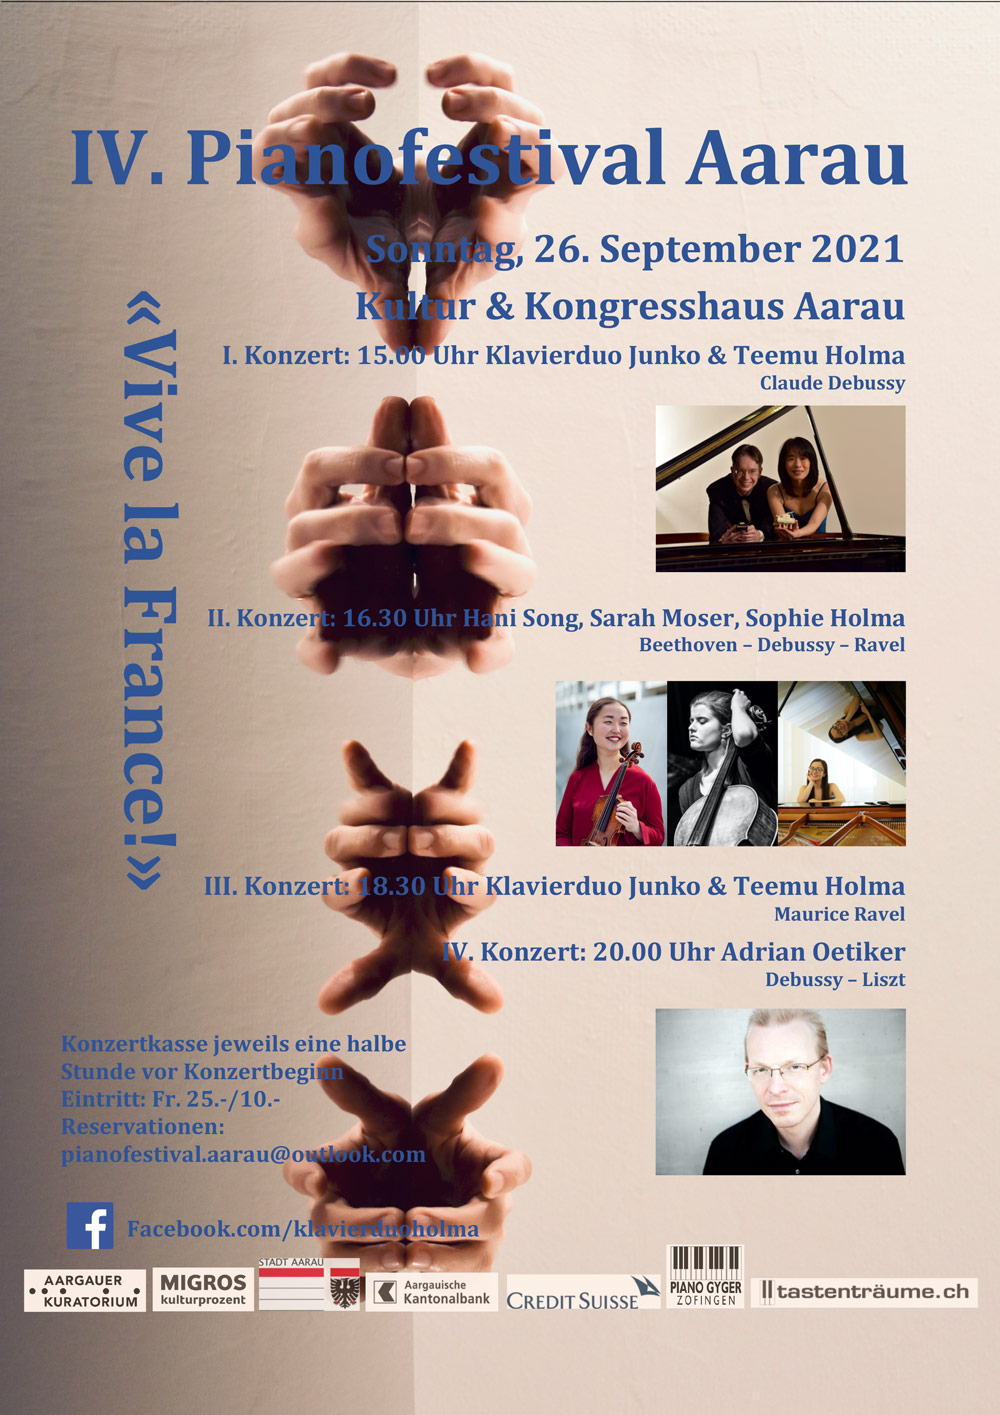 IV. Pianofestival Aarau 2021